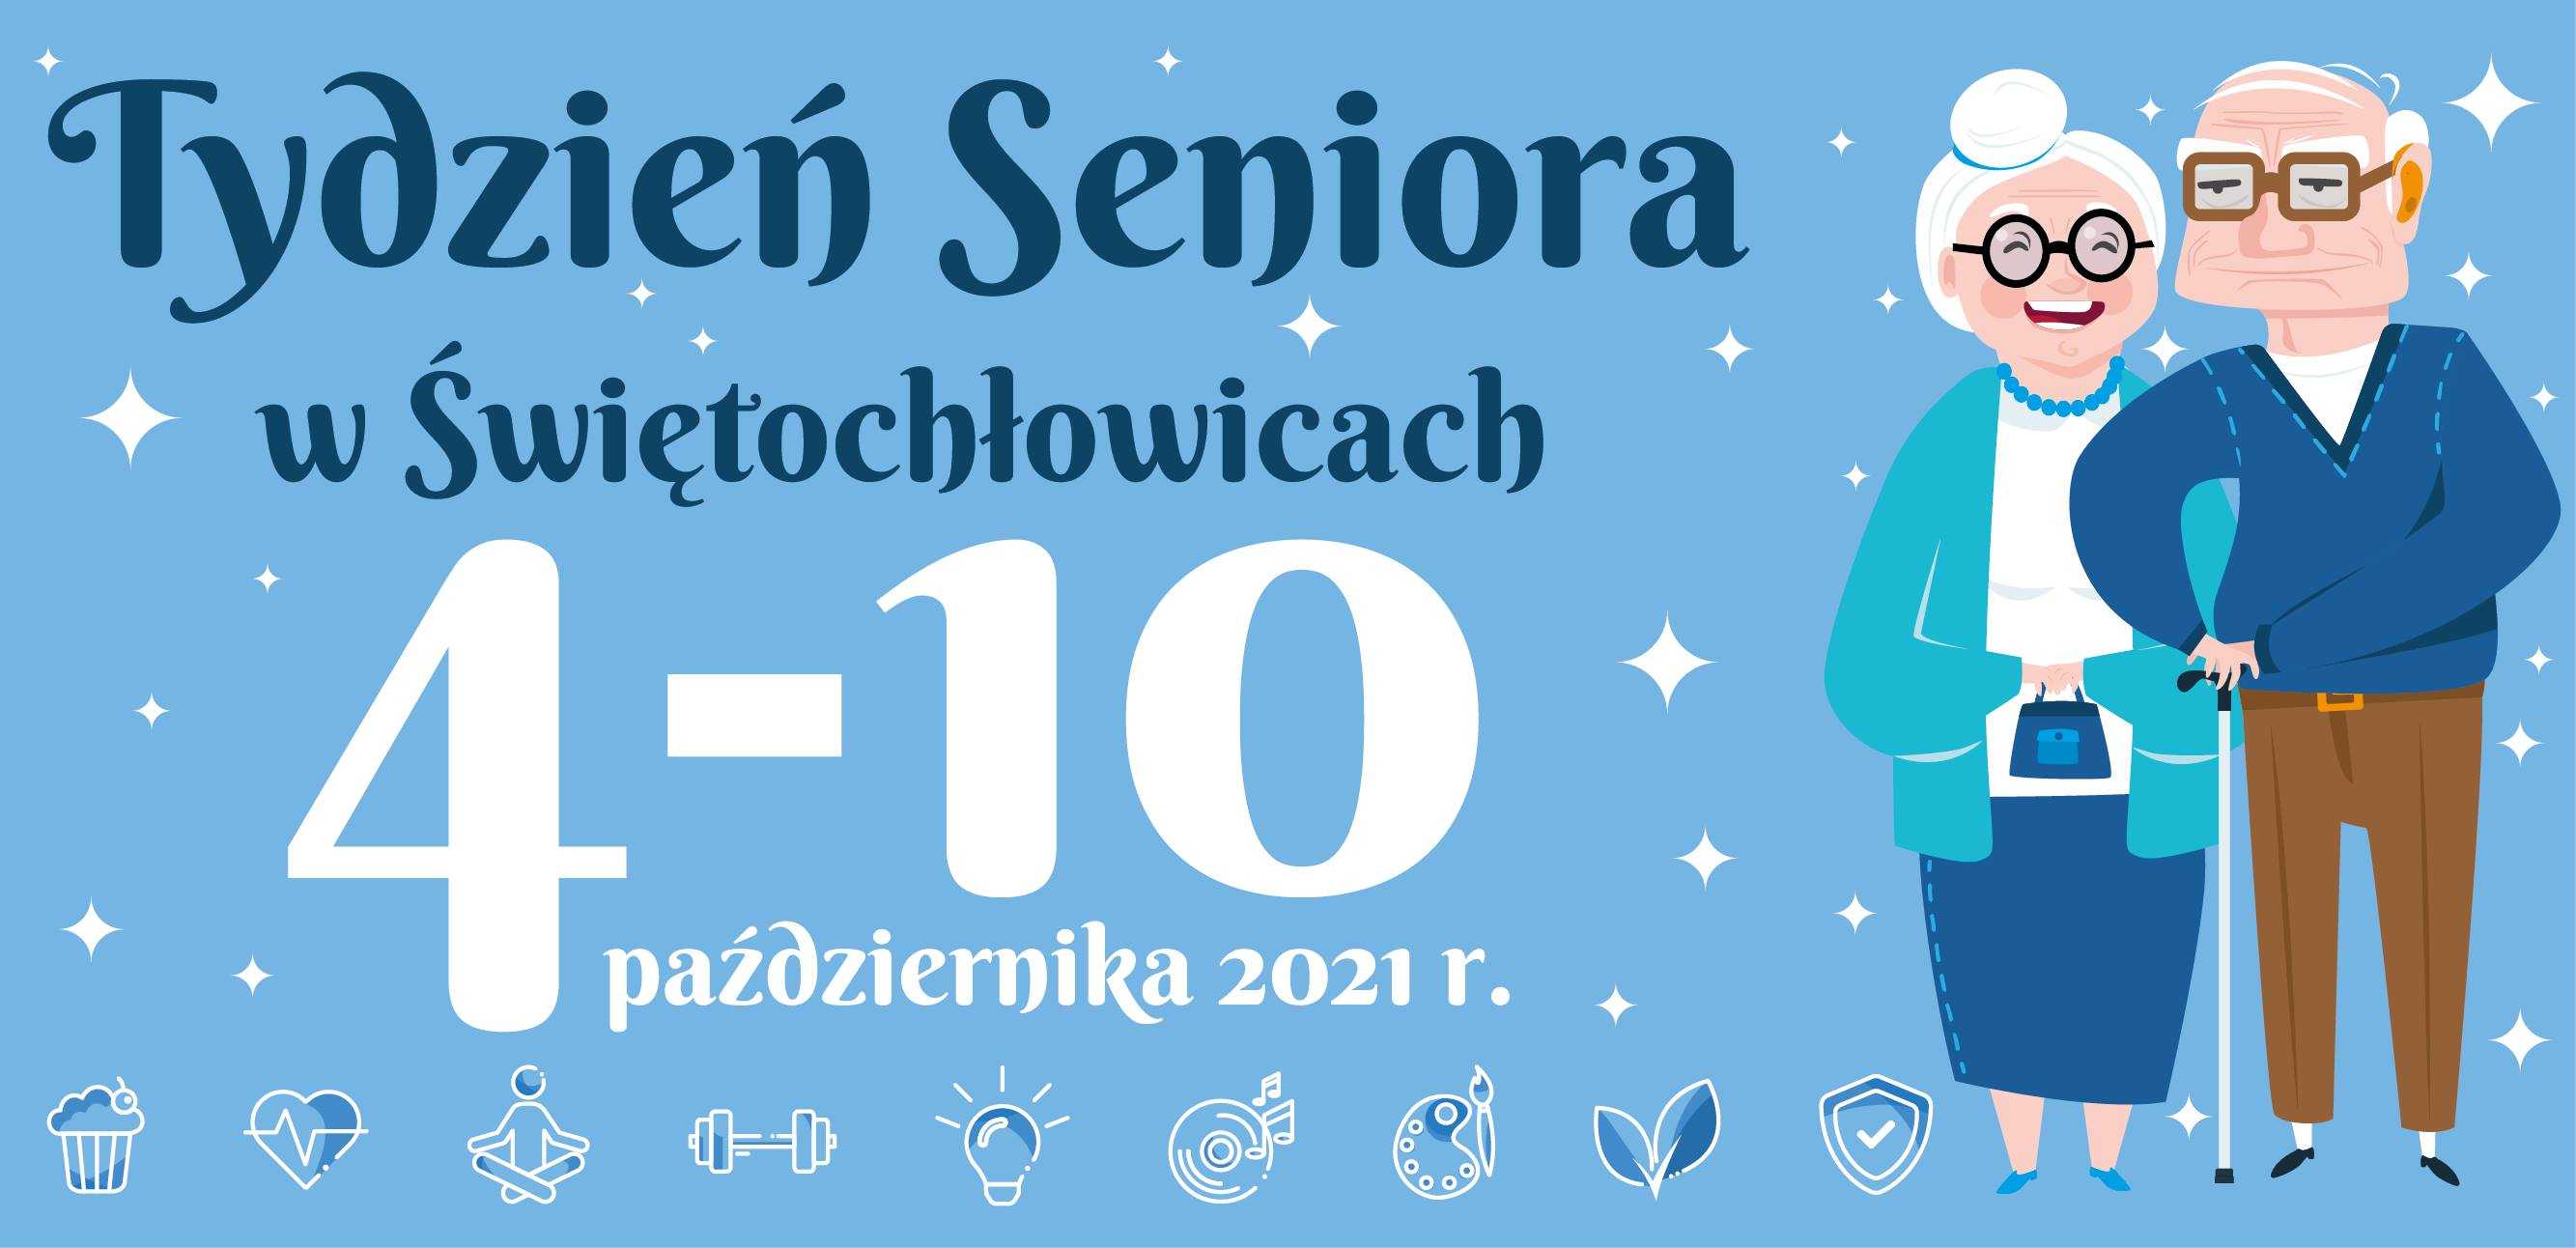 Tydzień Seniora w Świętochłowicach 1